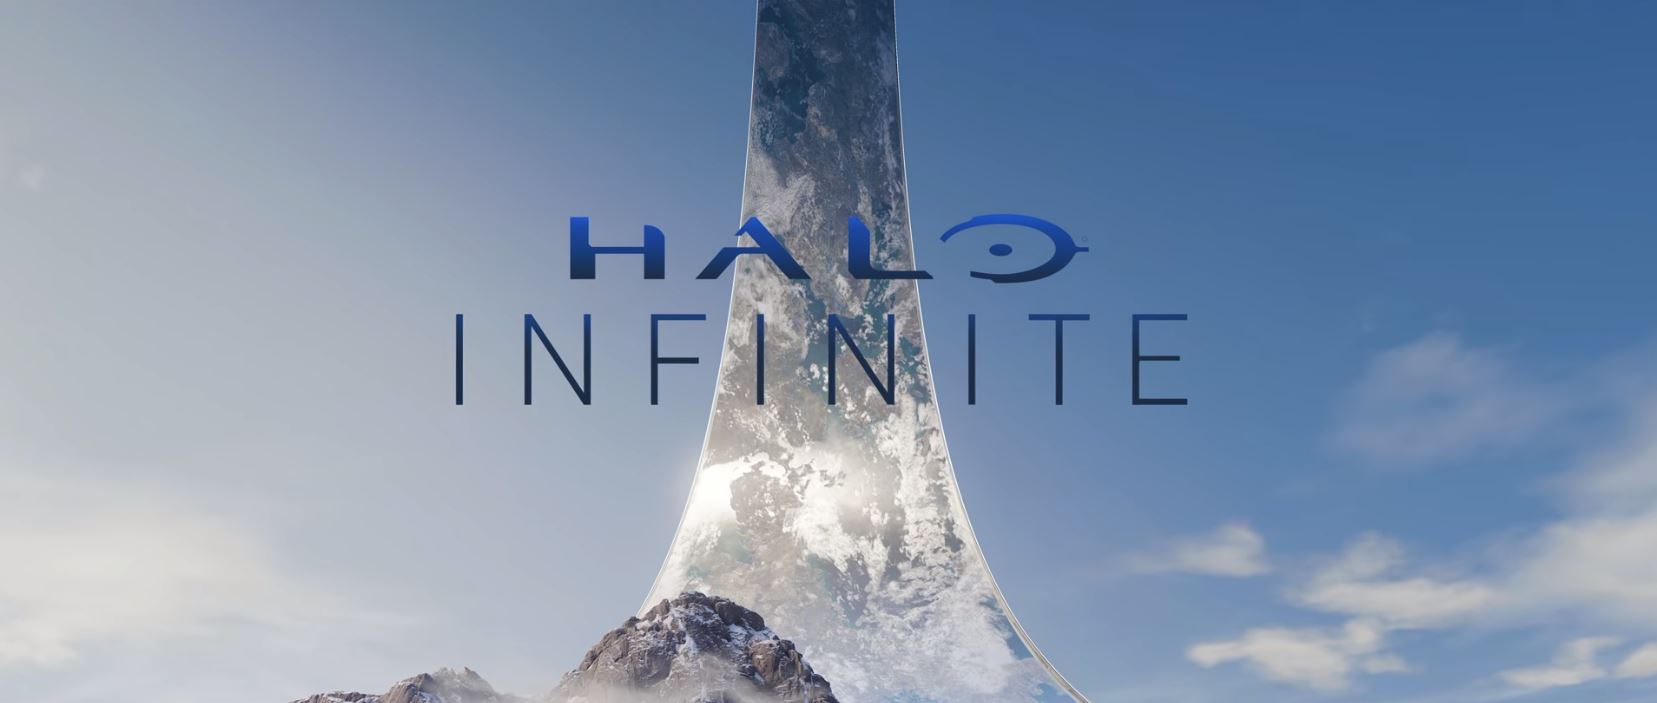 Alles zu Halo Infinite: Das wissen wir bereits über das inoffizielle Halo 6